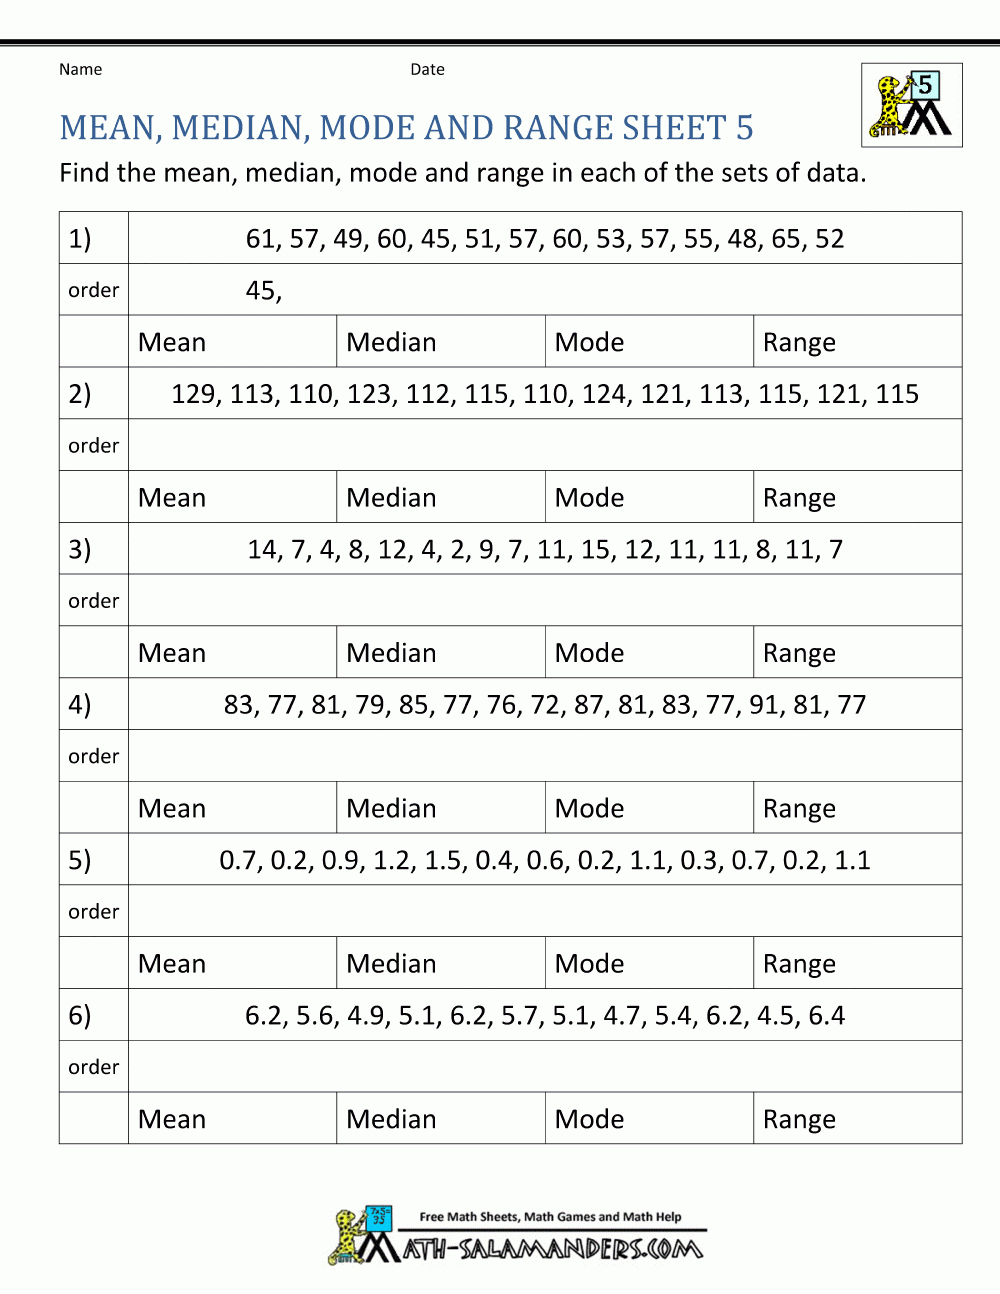 Mean Median Mode Range Worksheets Also Mean Median Mode Range Worksheets With Answers